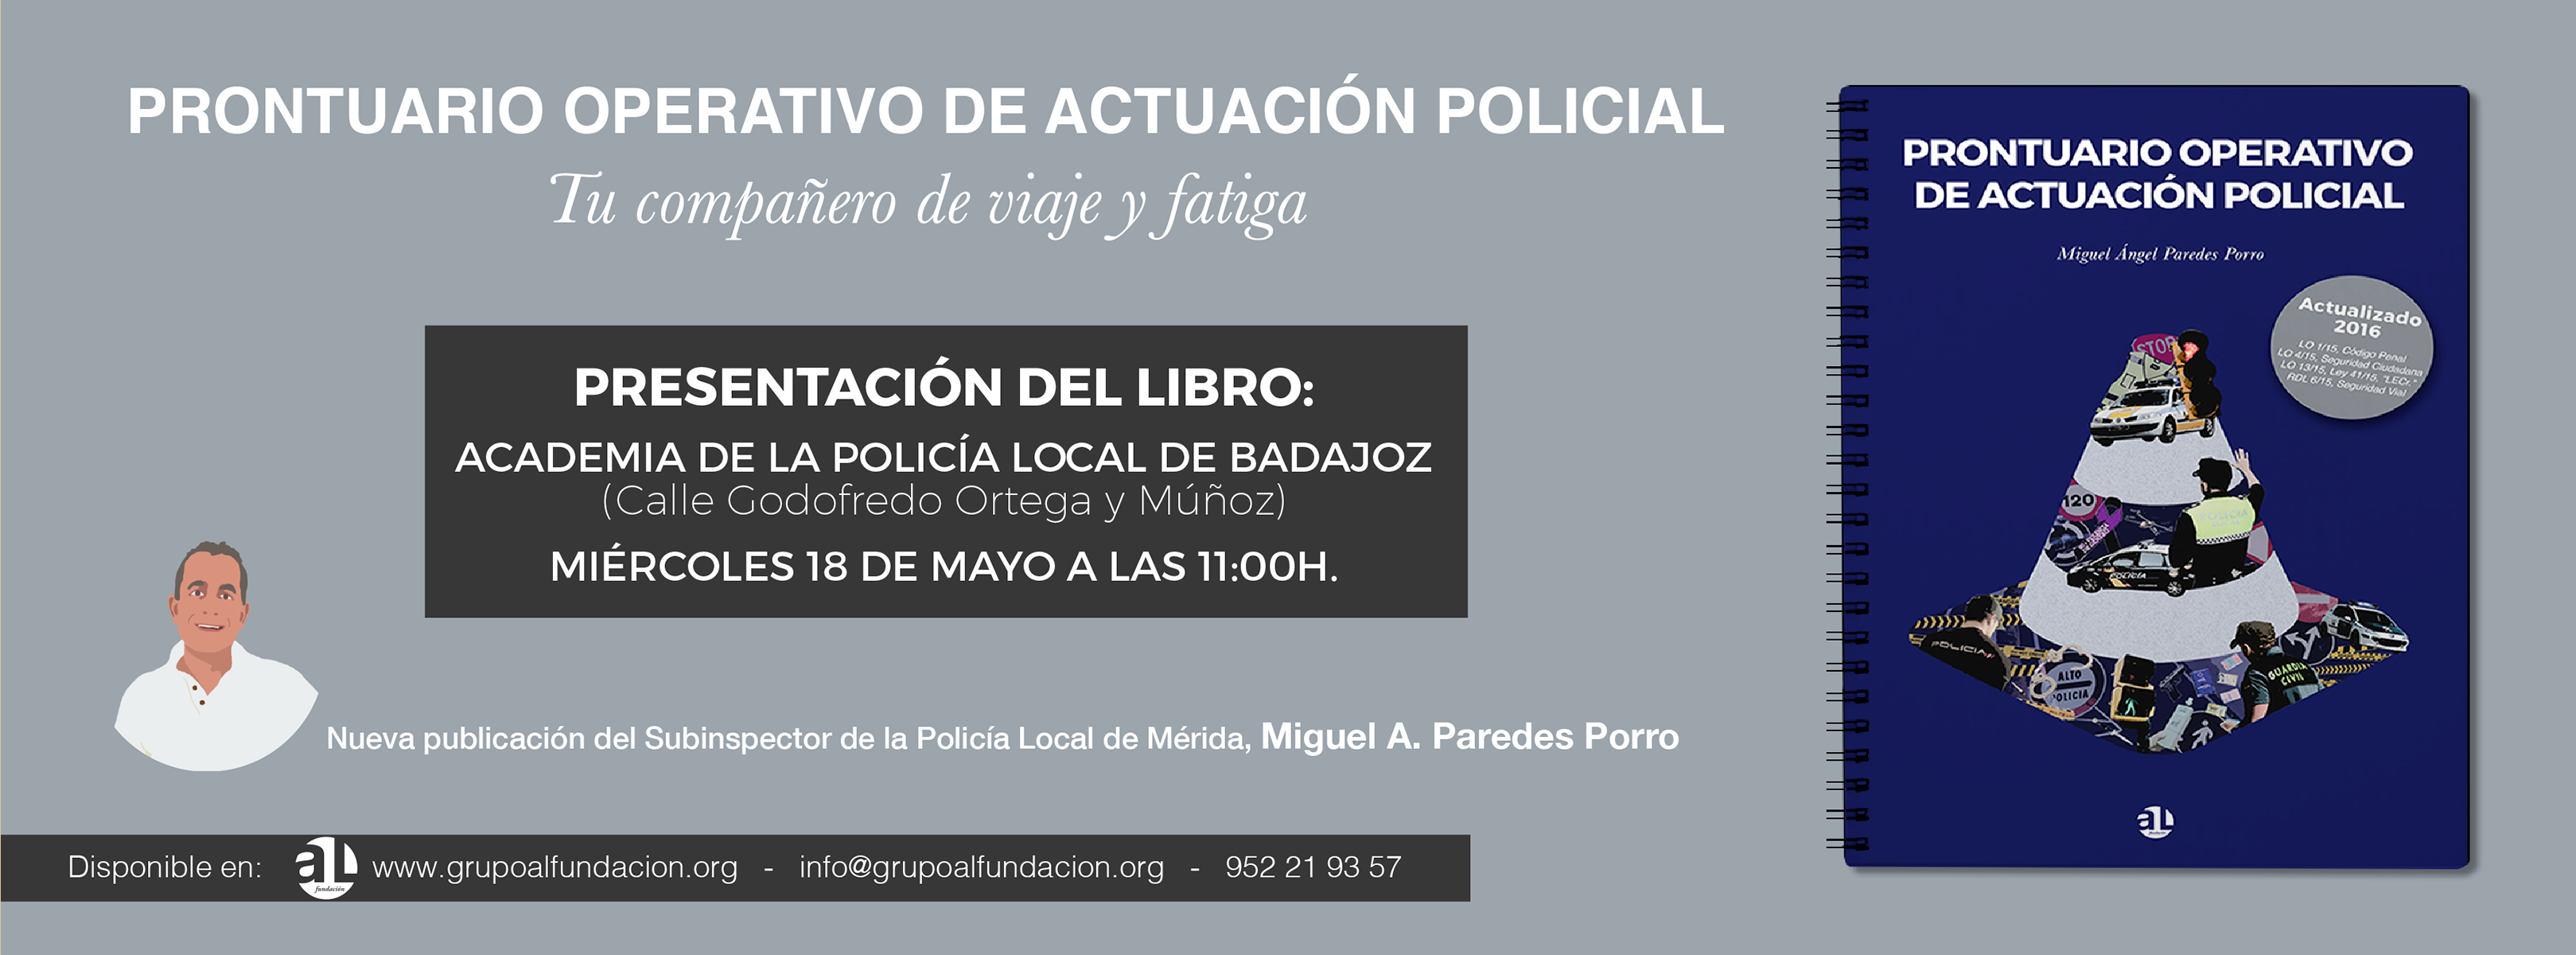 Prontuario operativo de actuación policial, Miguel Ángel Paredes Porro, AL Fundación, banner facebook de la presentación del libro